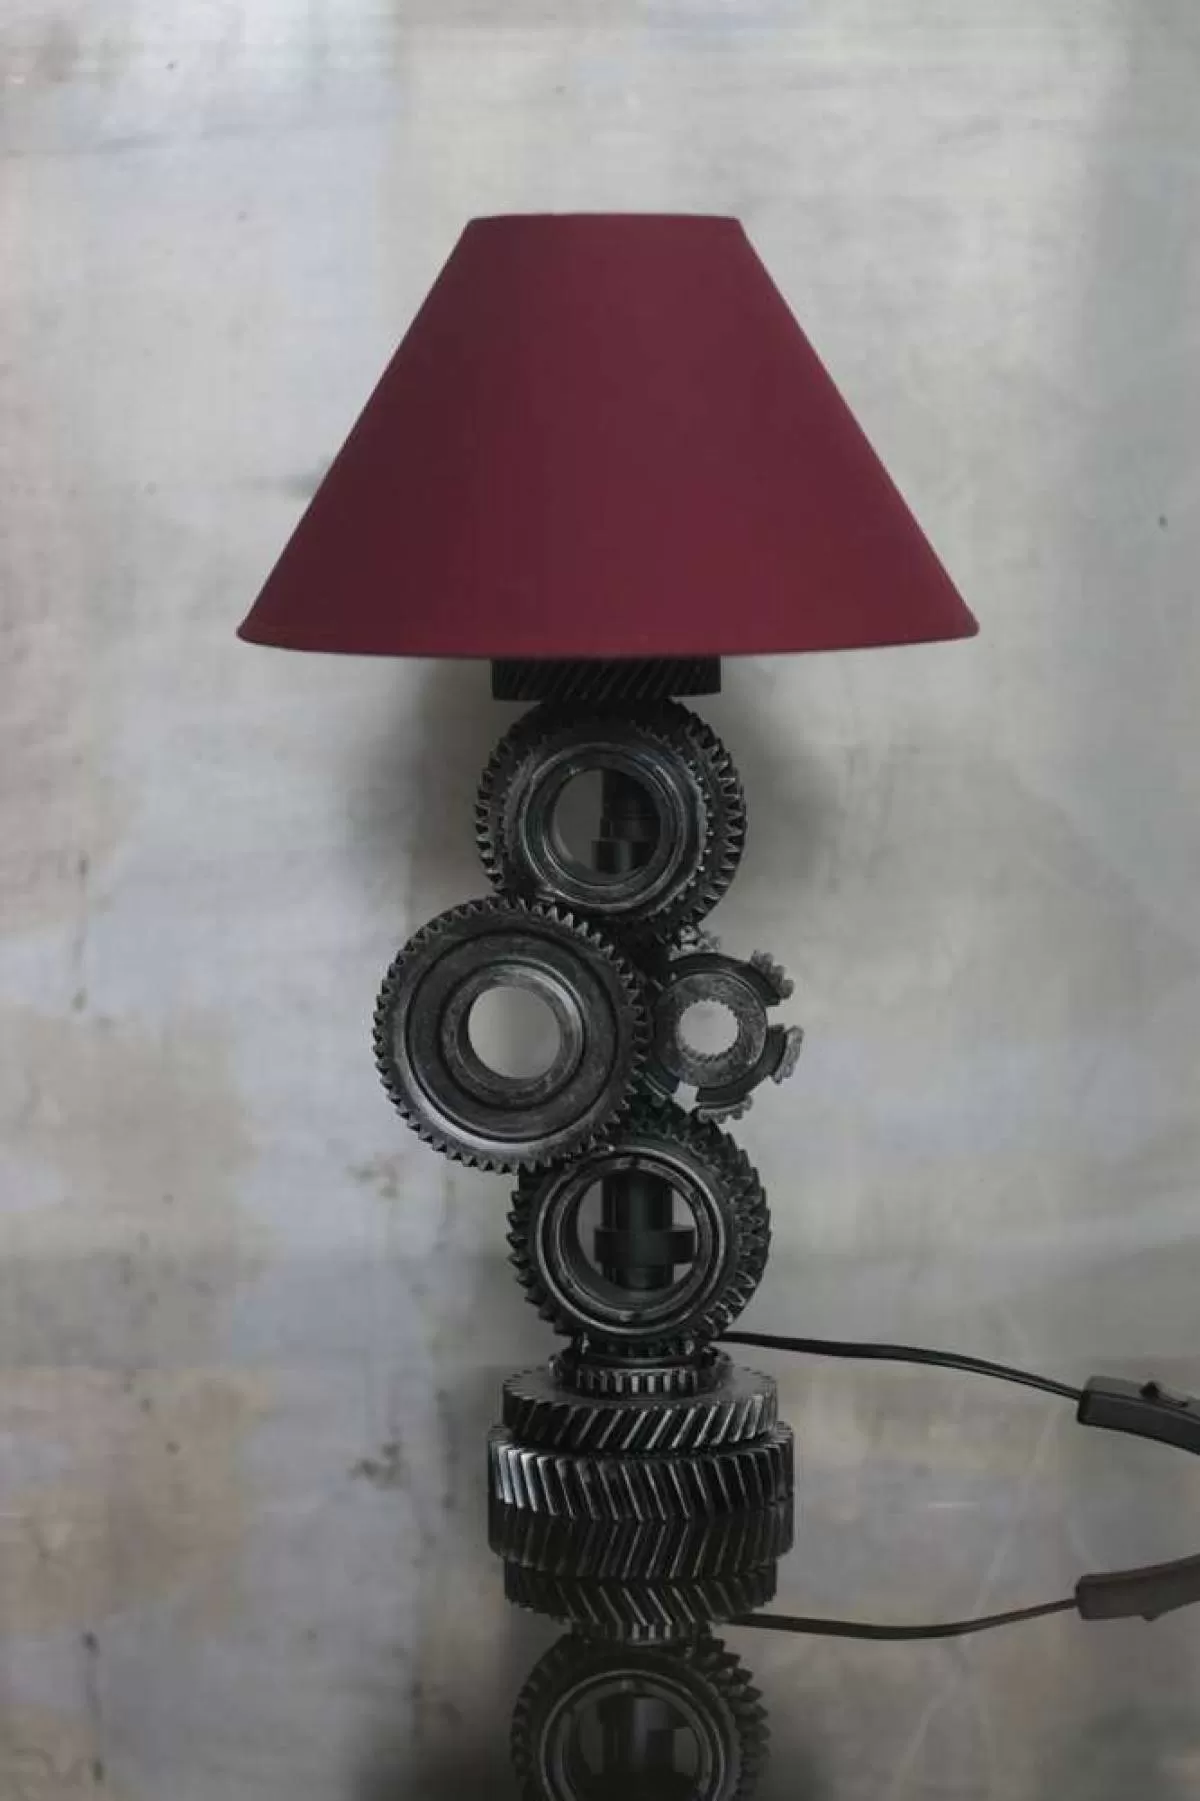 Светильник «Шестерни» с красным абажуром. Фотография 5